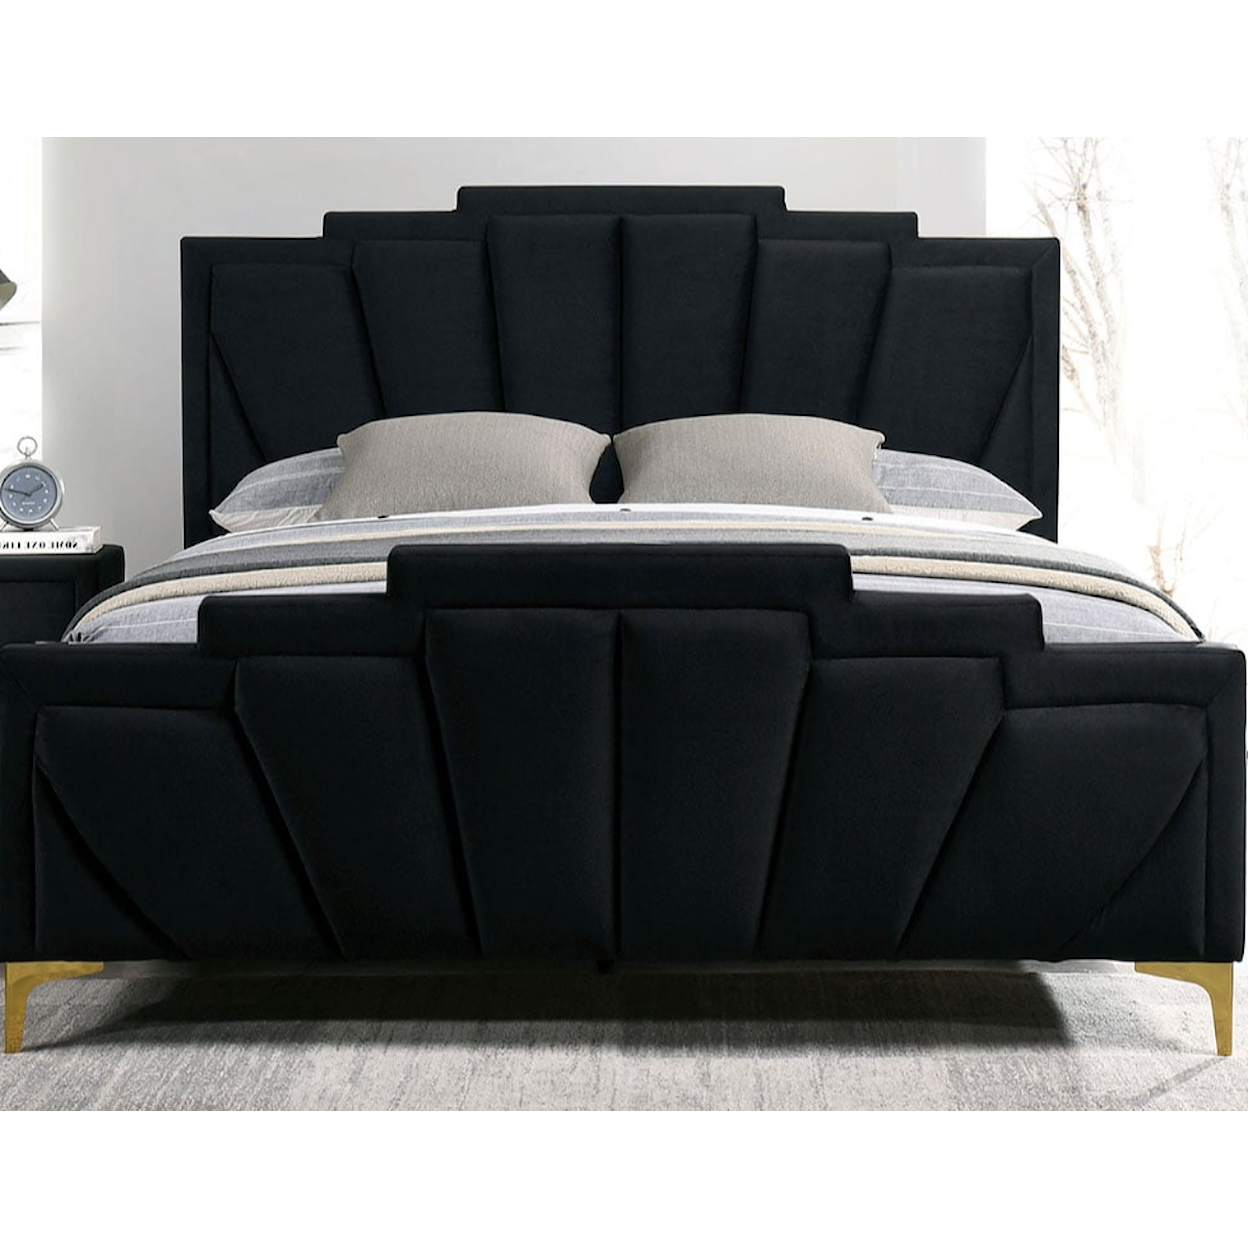 Furniture of America FLORIZEL Upholstered Cal. King Panel Bed - Black